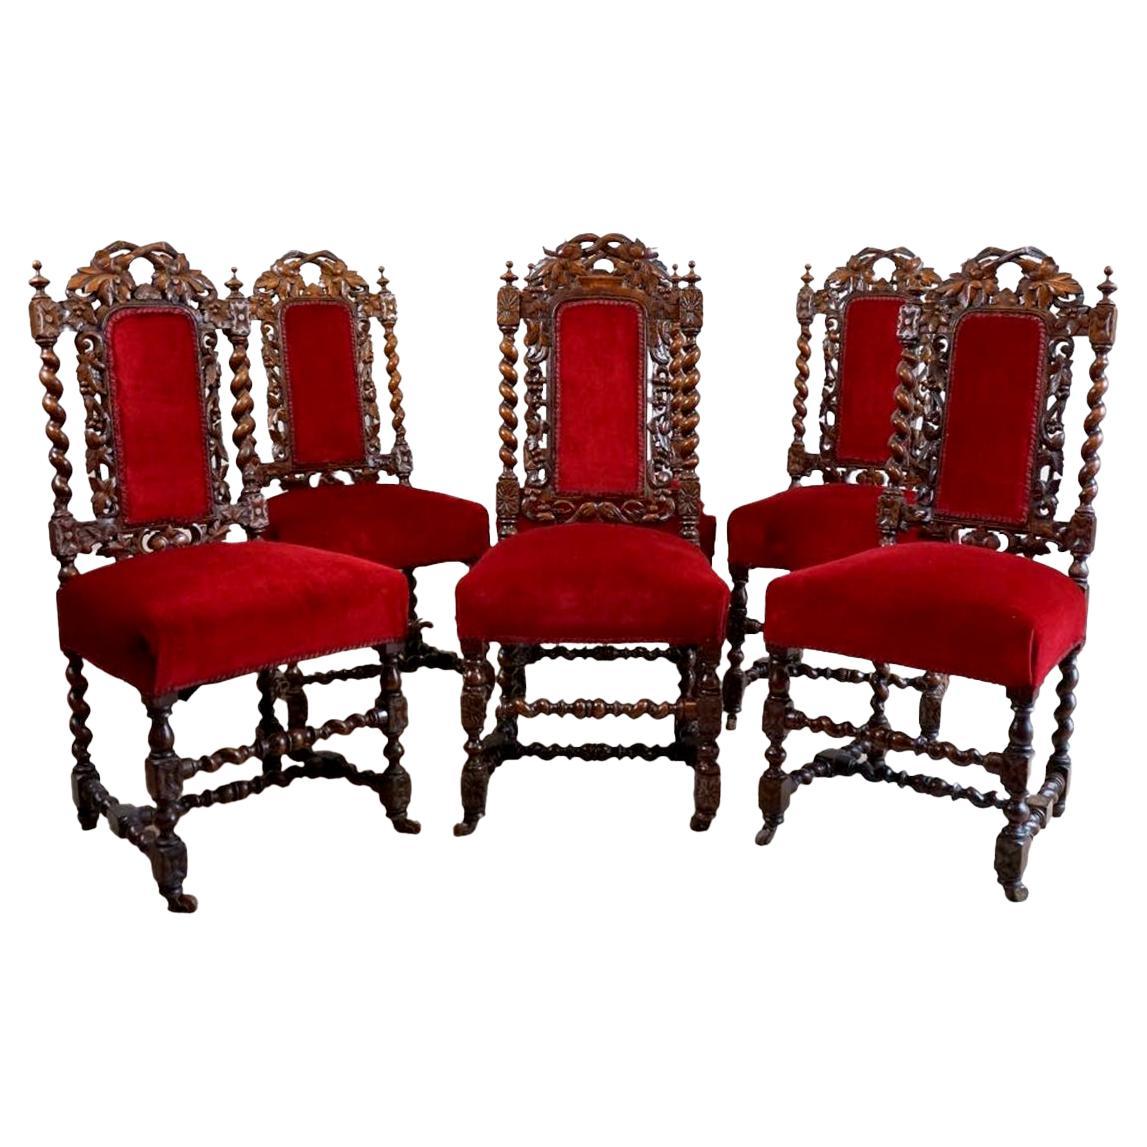 Très belles chaises de salle à manger en chêne de l'époque victorienne